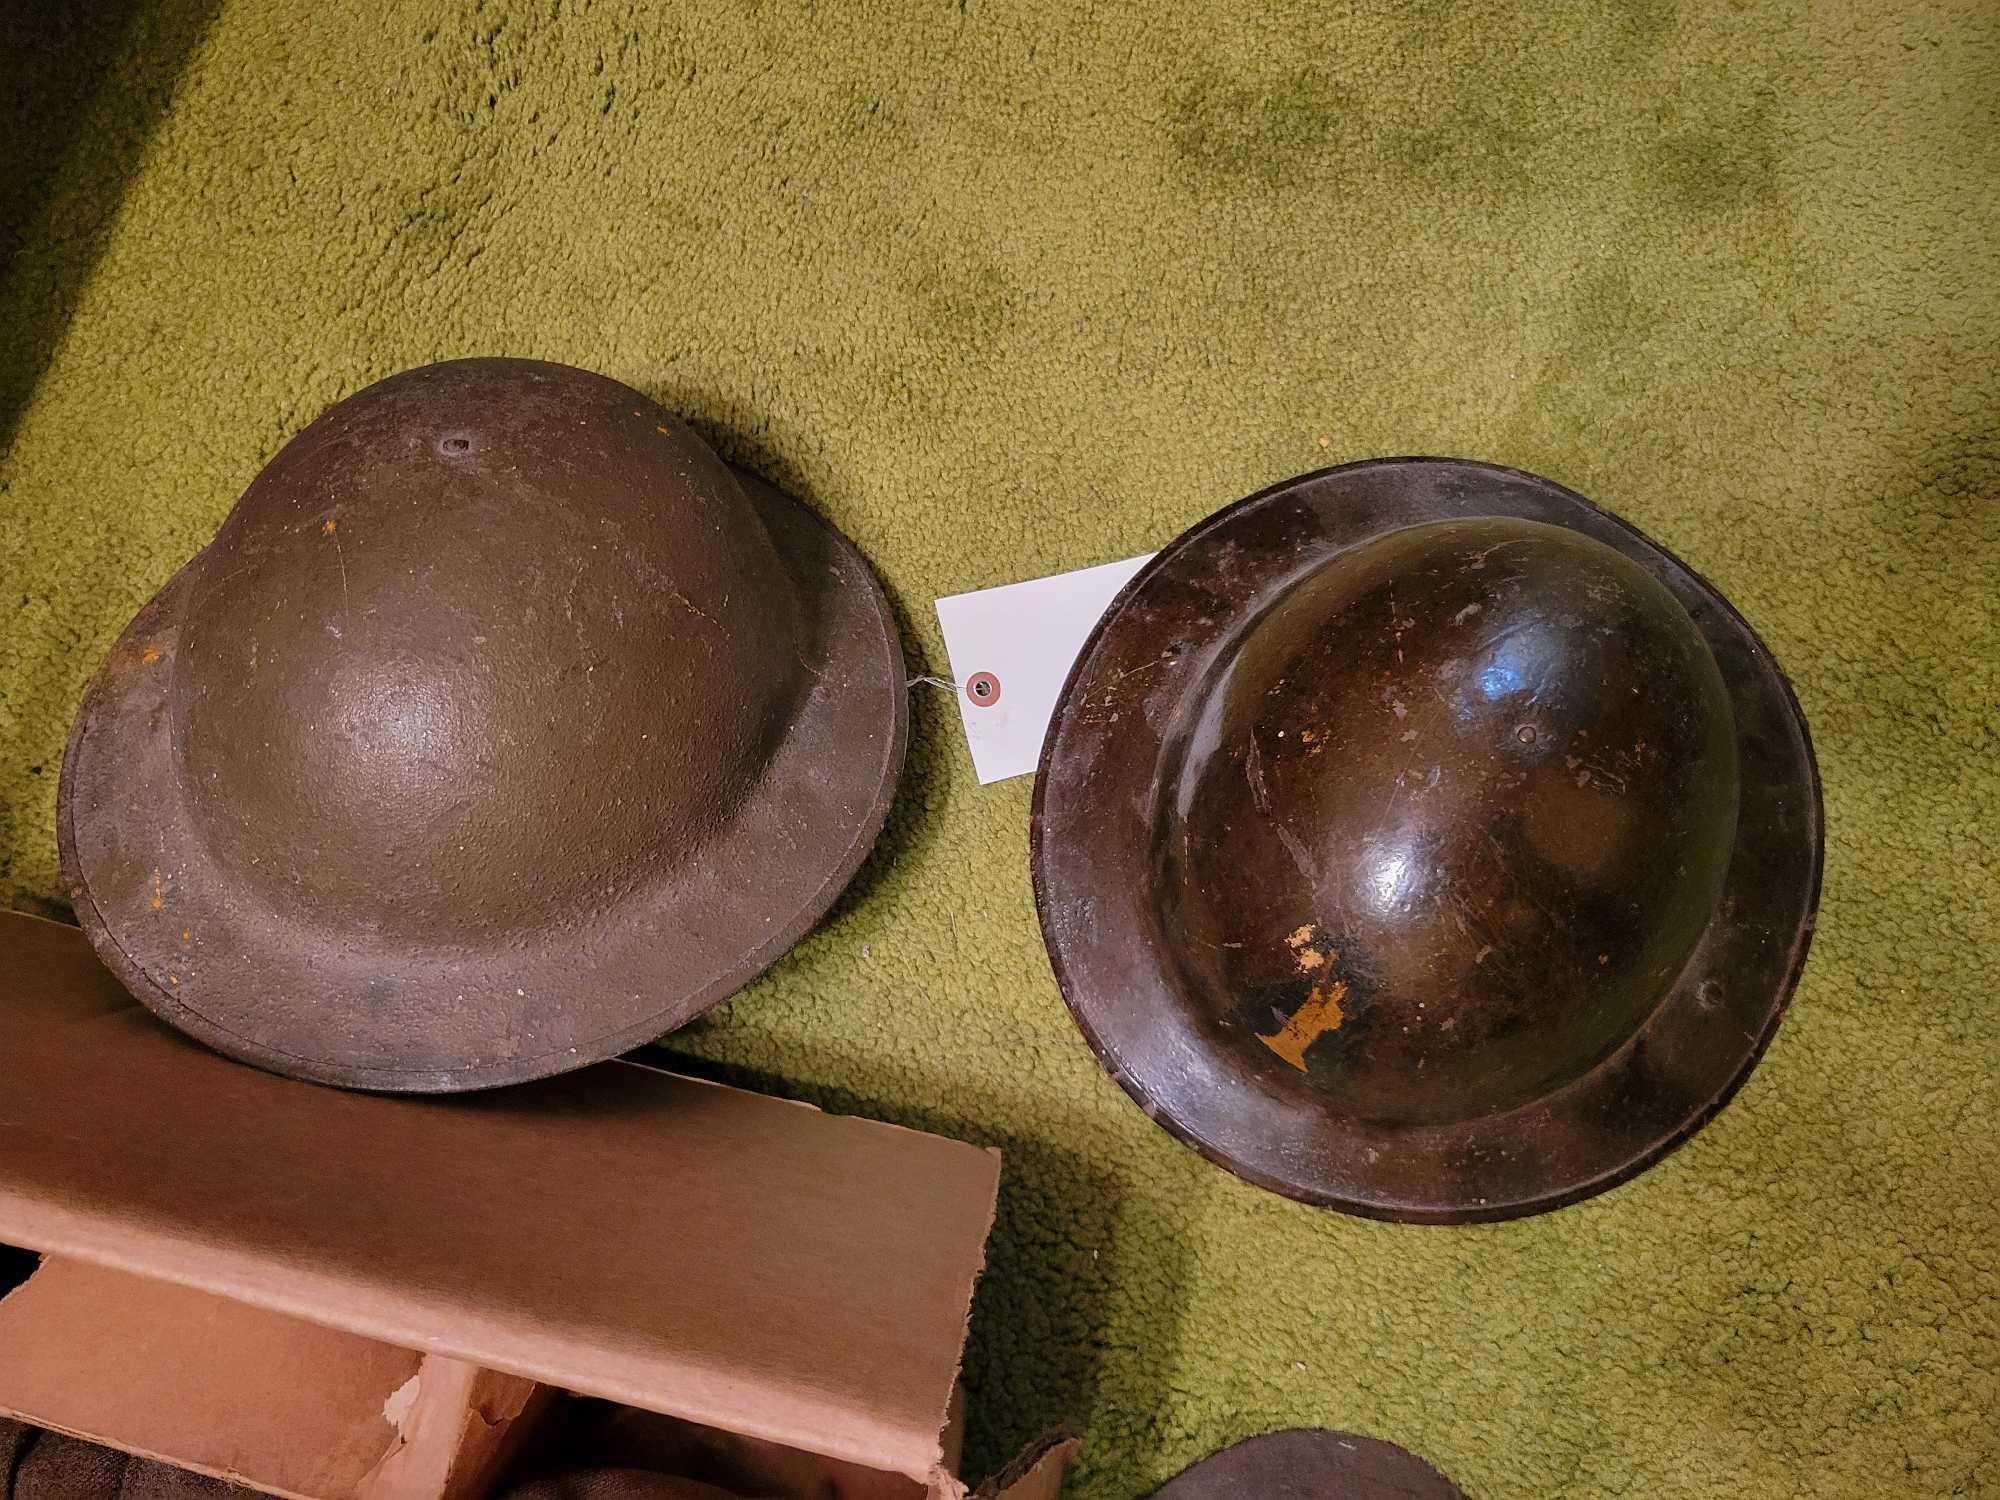 Early army helmet, scope, reel, military